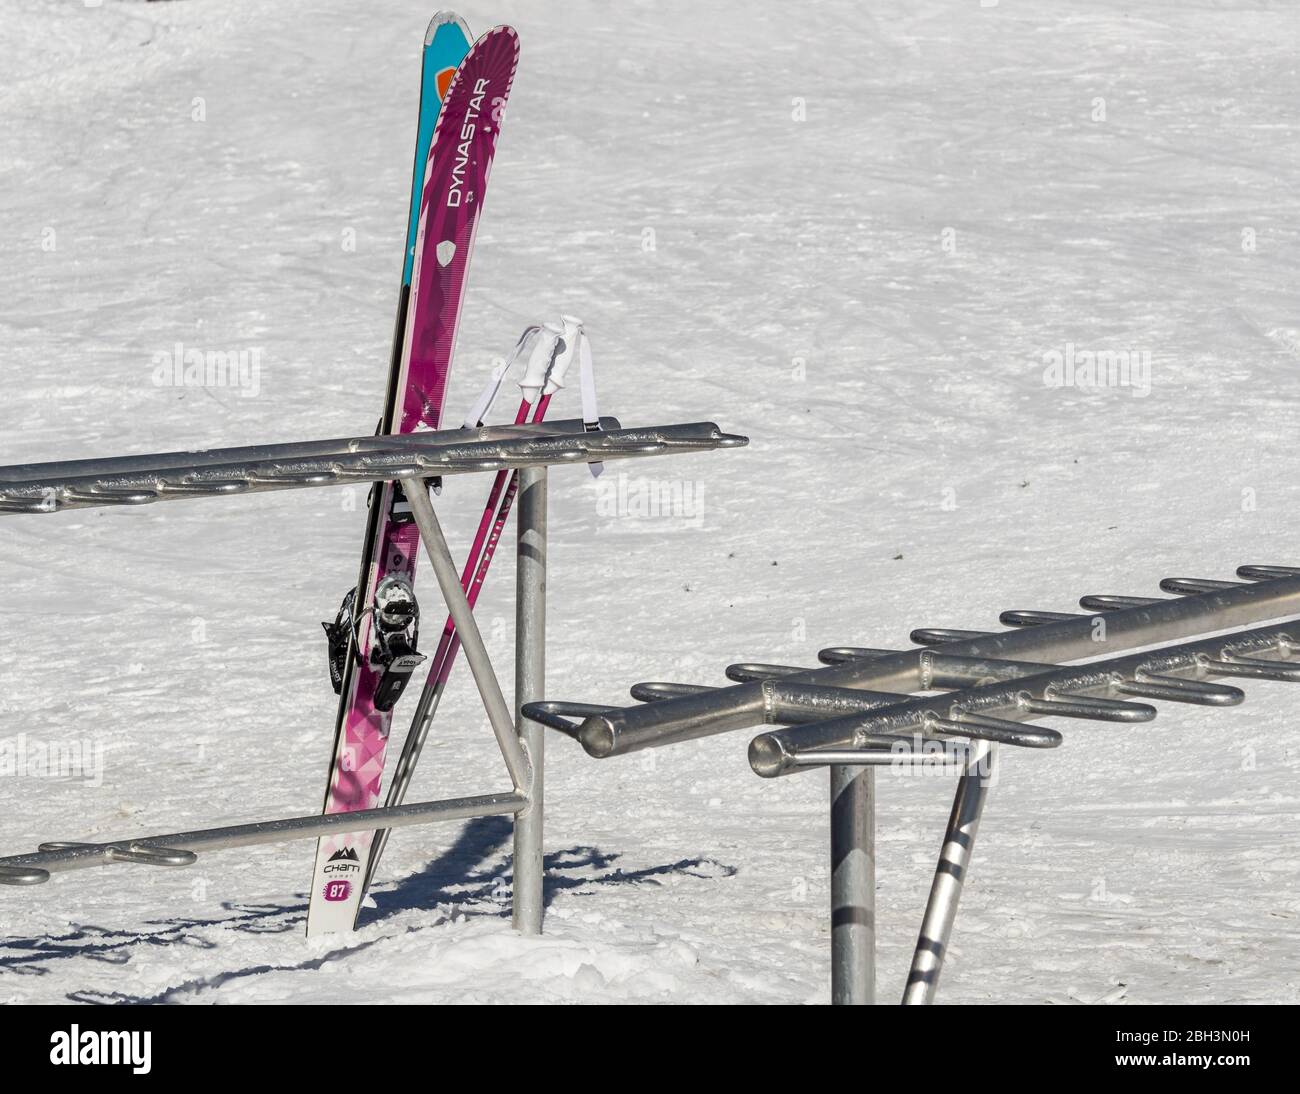 FAIRMONT HOT SPRINGS, KANADA - 16. MÄRZ 2020: Skier auf einem Stand im Schnee-Winterresort. Stockfoto